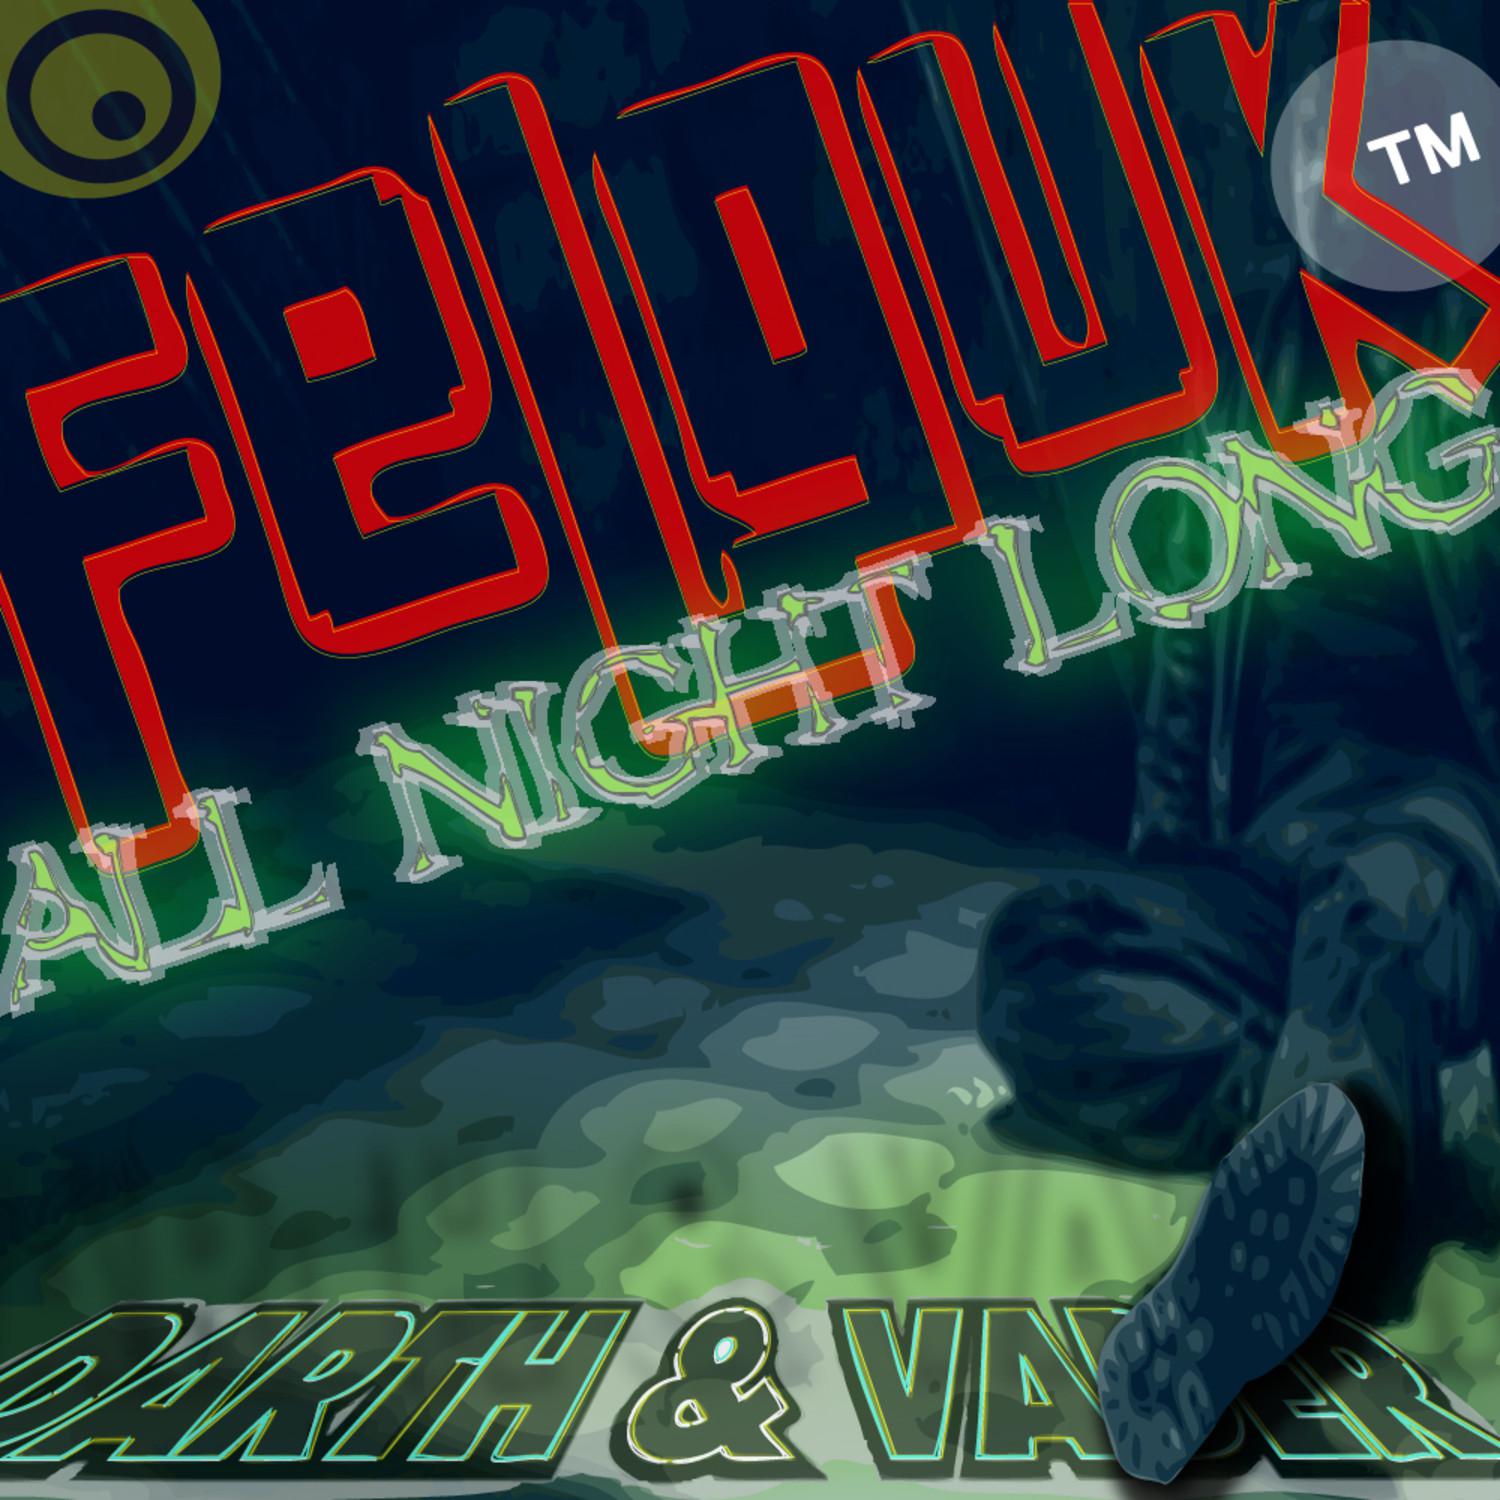 Felguk - All Night Long (Darth & Vader Mix)